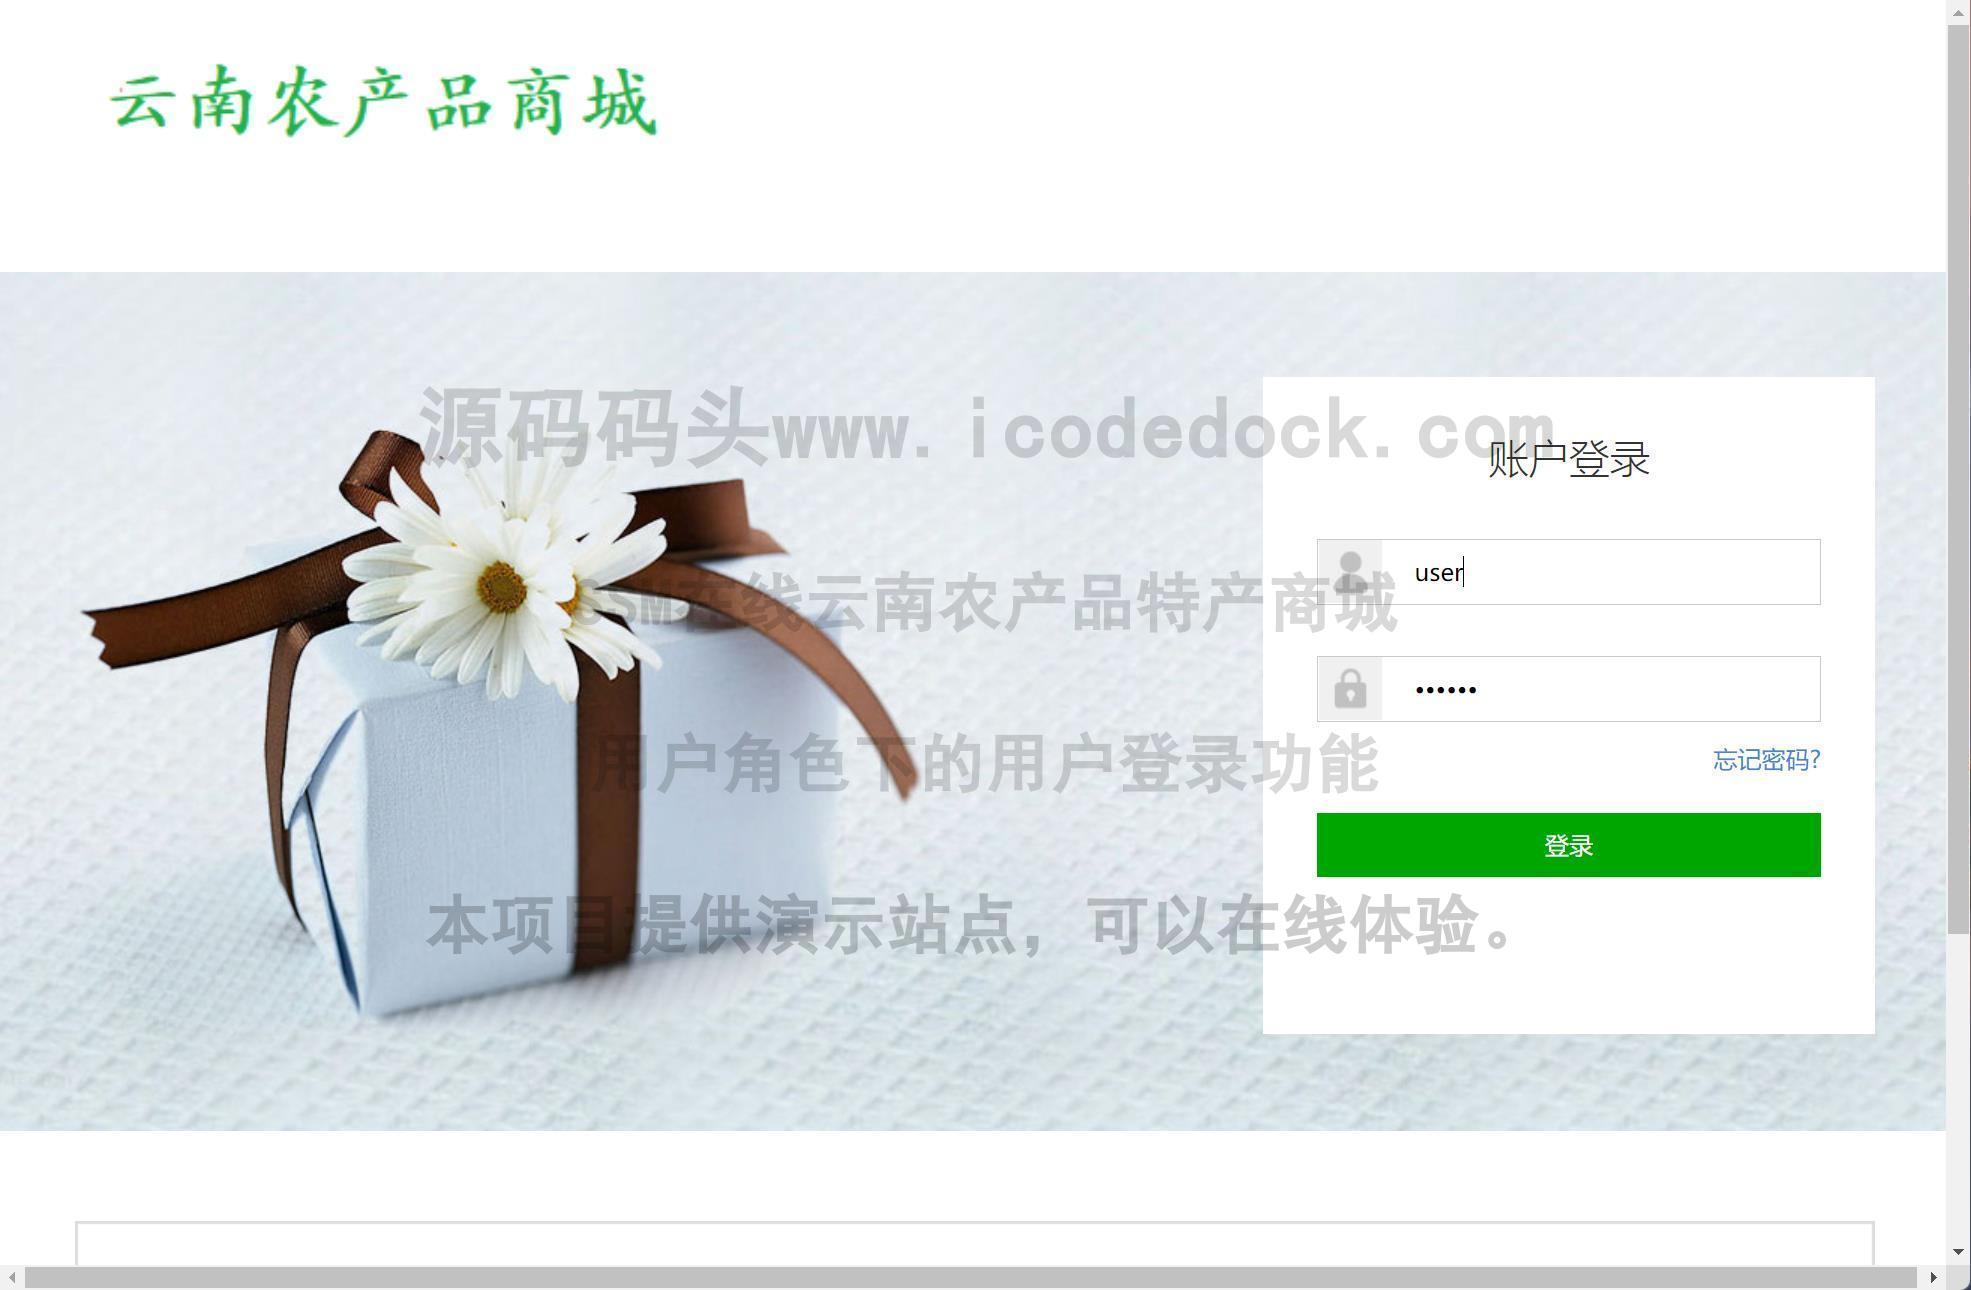 源码码头-SSM在线云南农产品特产商城-用户角色-用户登录